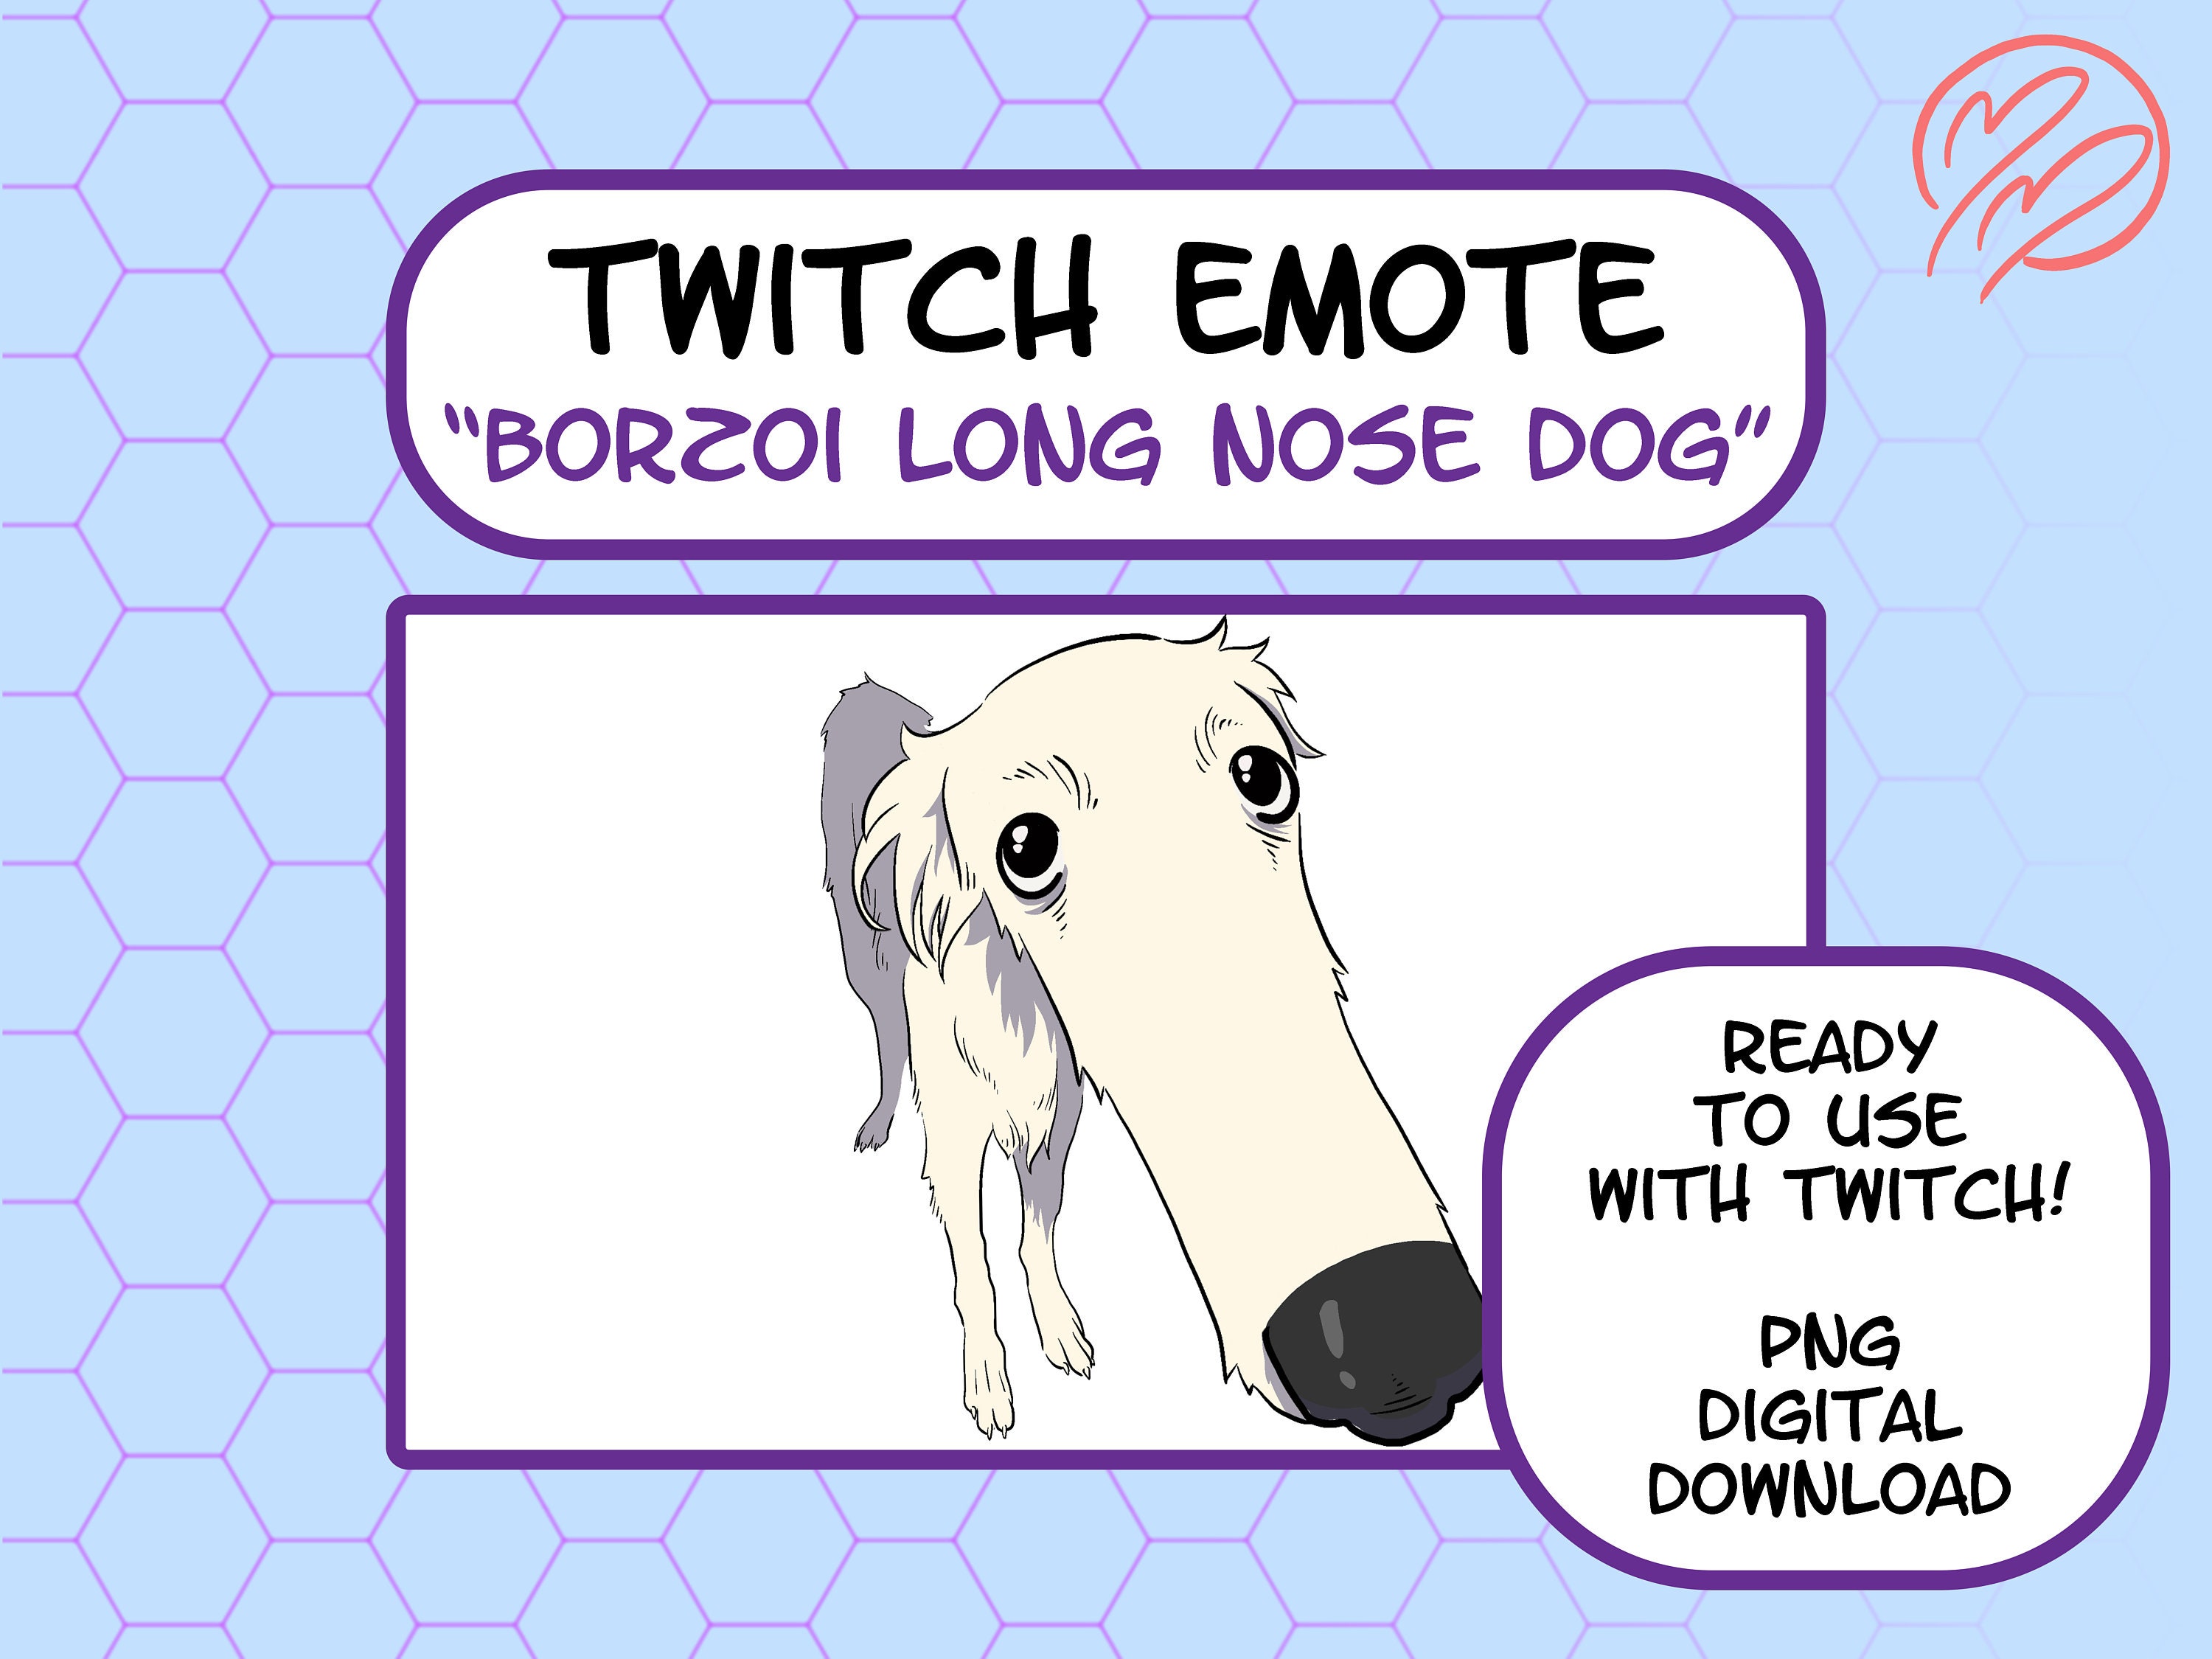 Borzoi Long Nose Dog Meme Twitch Emote, Discord Emote, Emote, Art ...